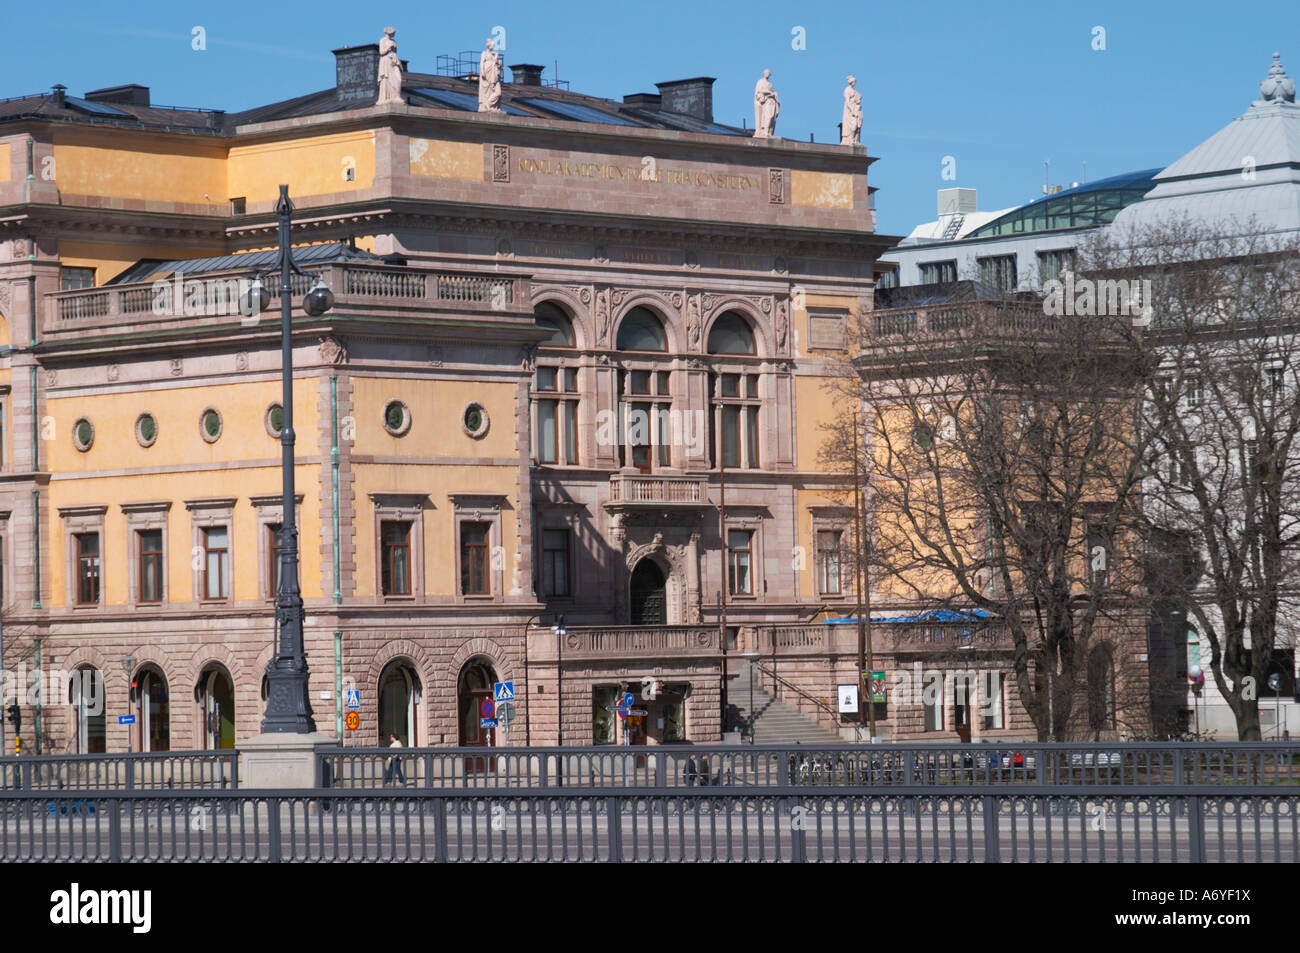 Konstakademien l'Académie royale des beaux-arts de l'Norrmalm. Stockholm. La Suède, l'Europe. Banque D'Images